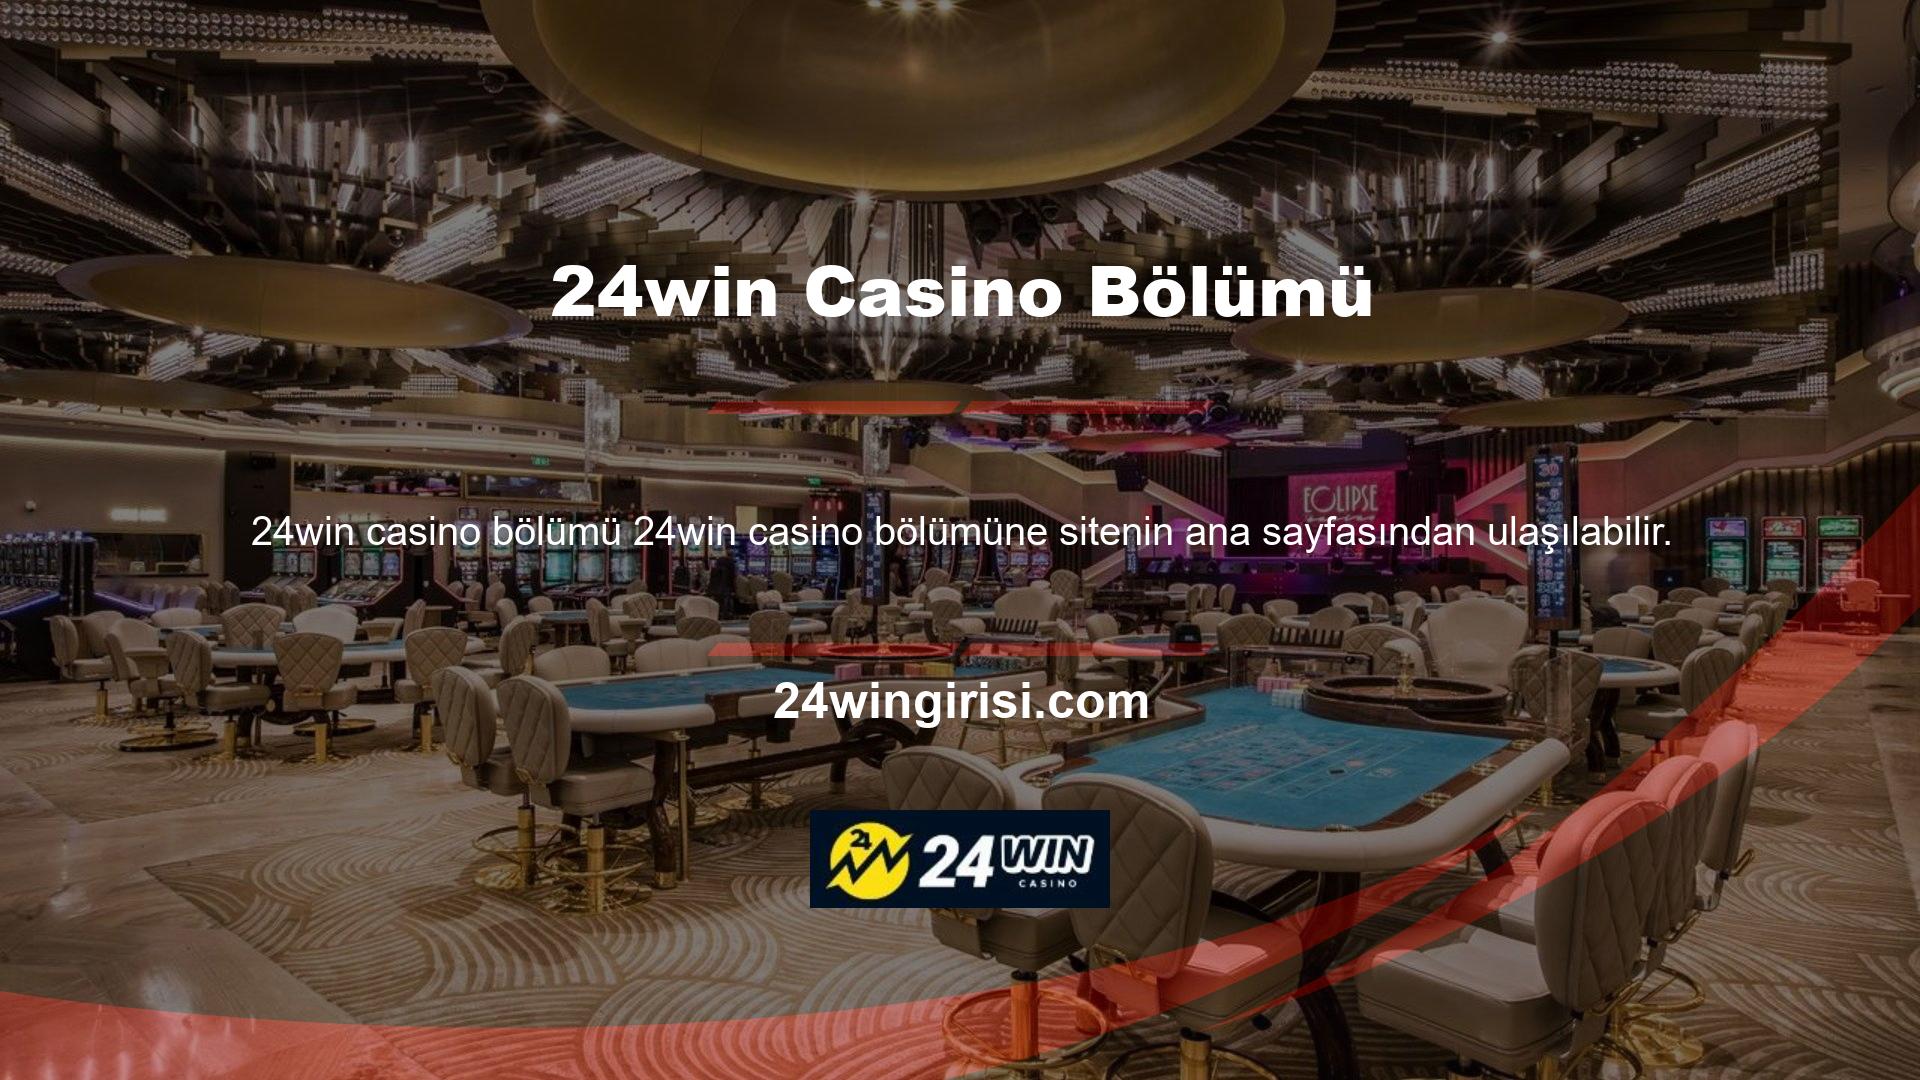 Casino sitesinde slotlar, masa oyunları ve jackpotlar bulunmaktadır